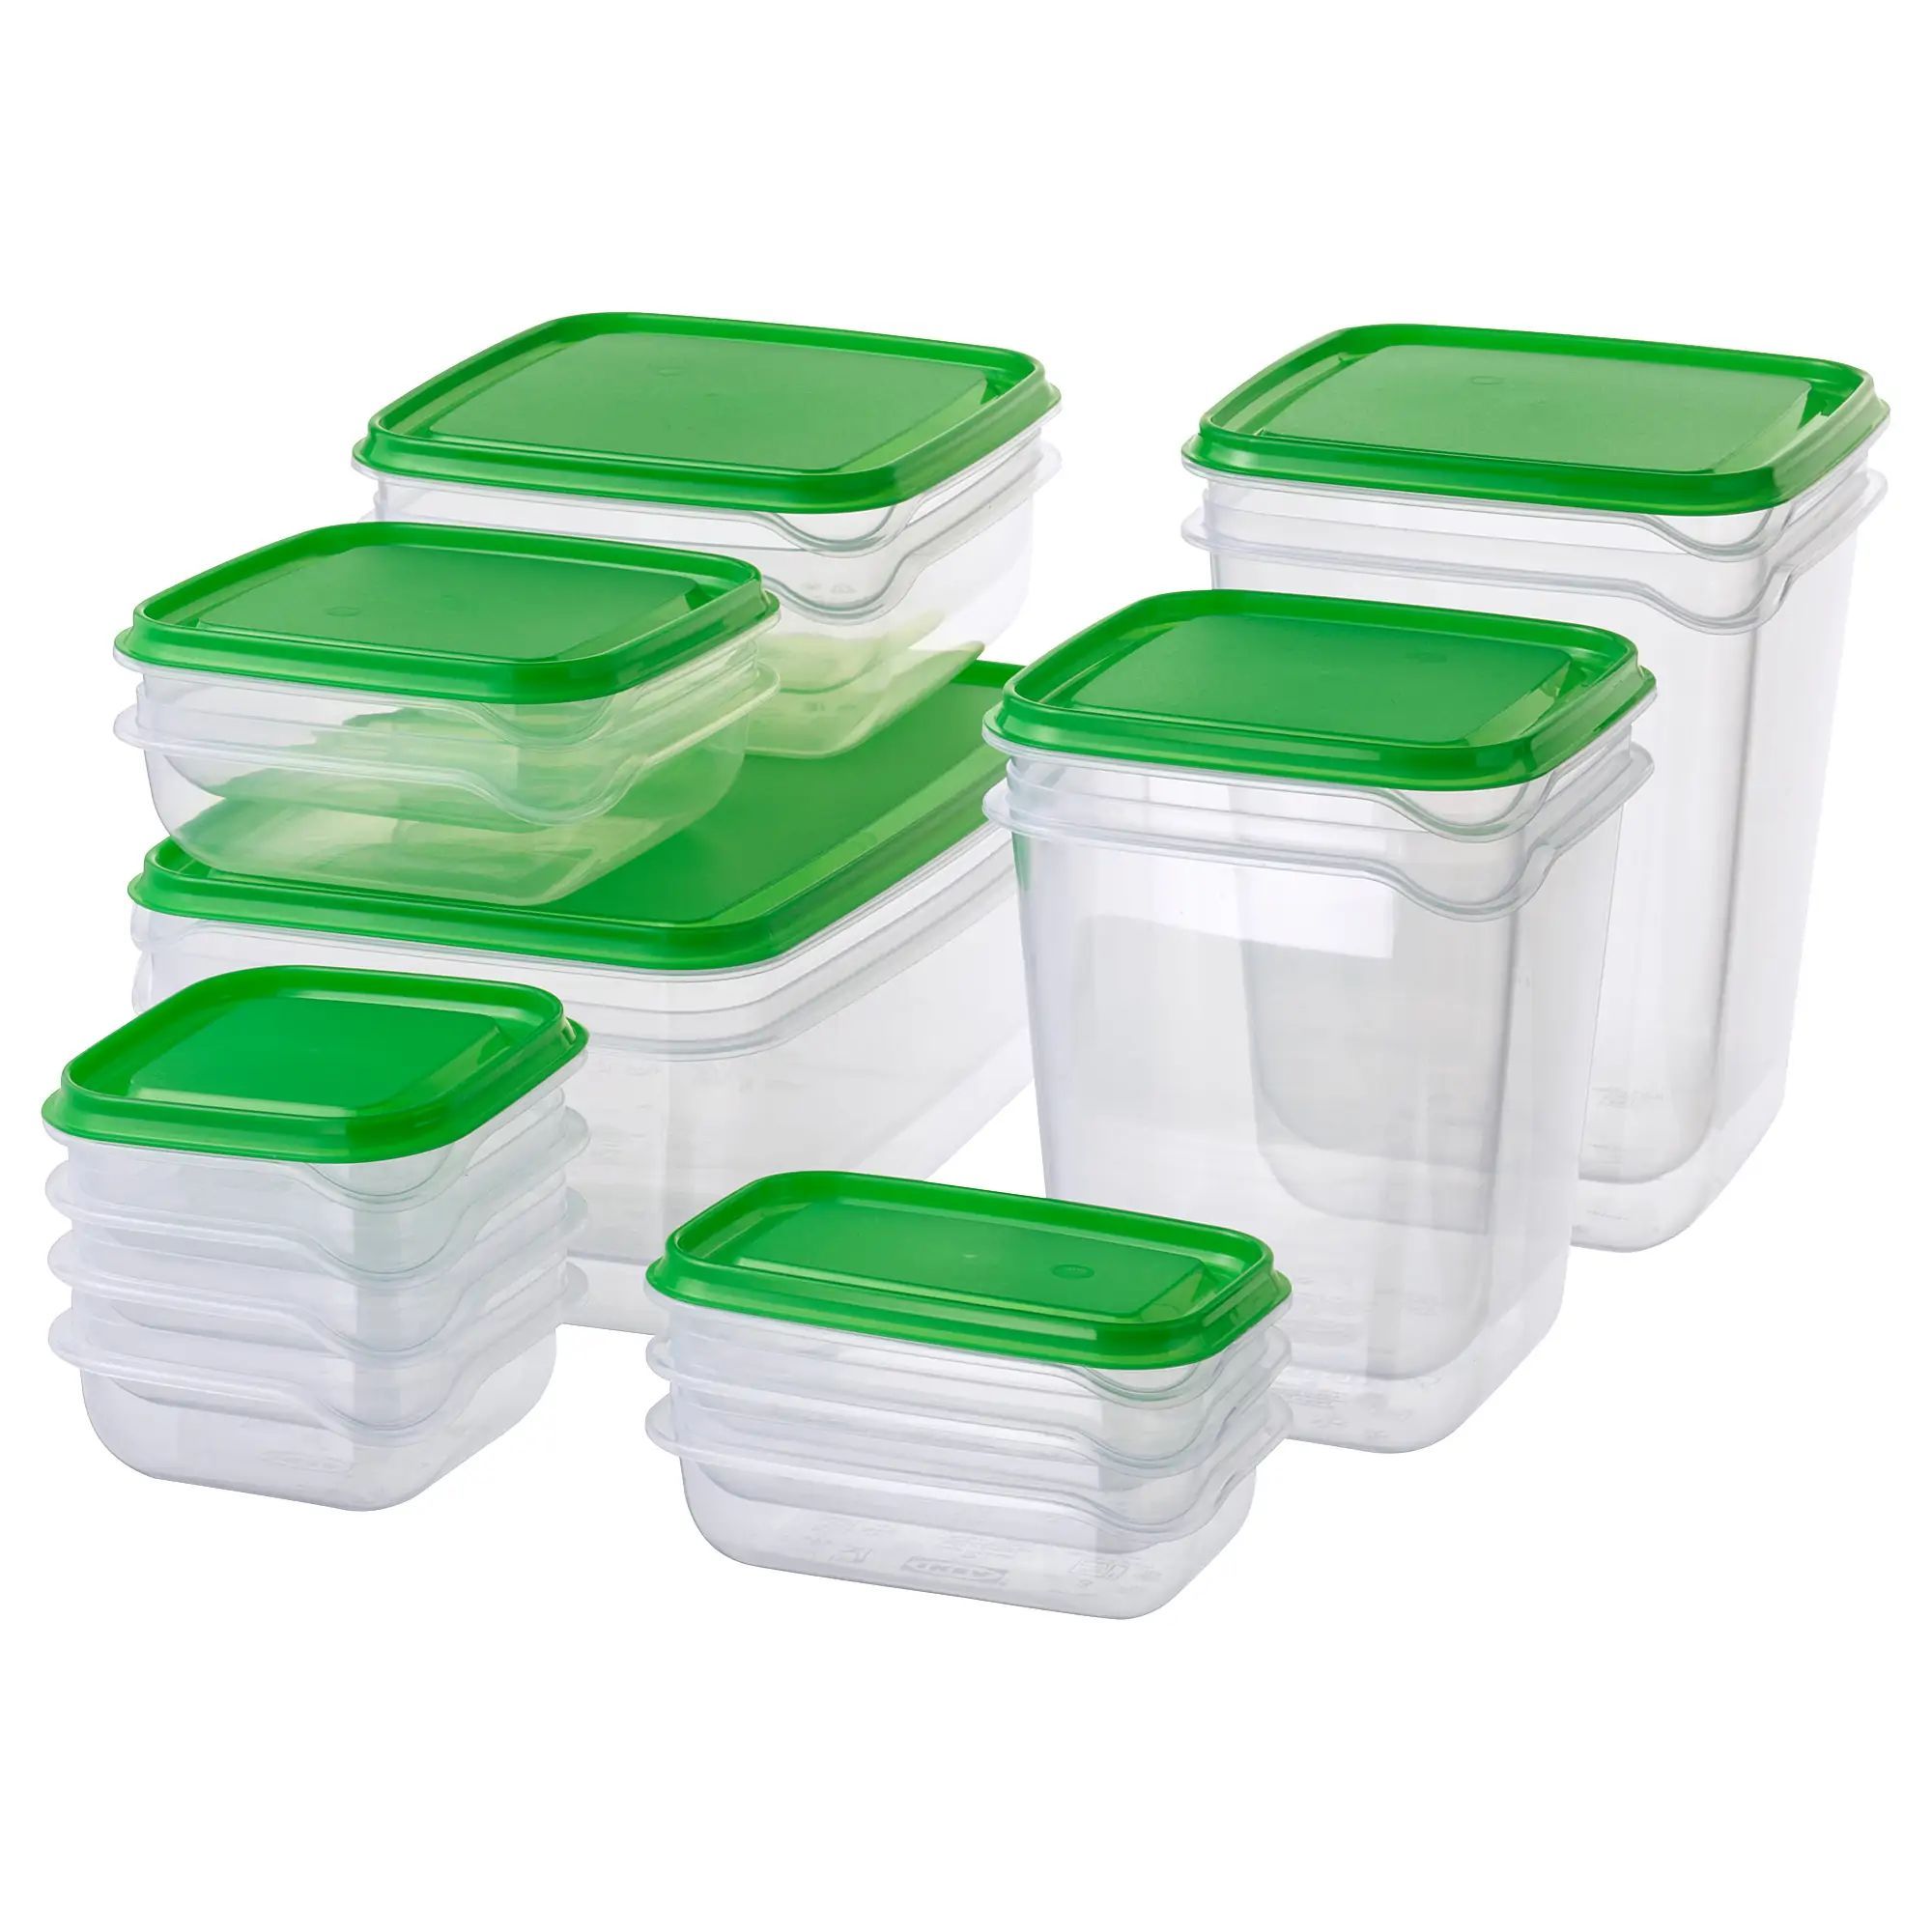 Пластиковые контейнеры купить в спб. Pruta прута набор контейнеров 17 шт прозрачный/зеленый. Pruta прута набор контейнеров 17 шт. Икеа набор контейнеров 17. Контейнеры прута икеа.